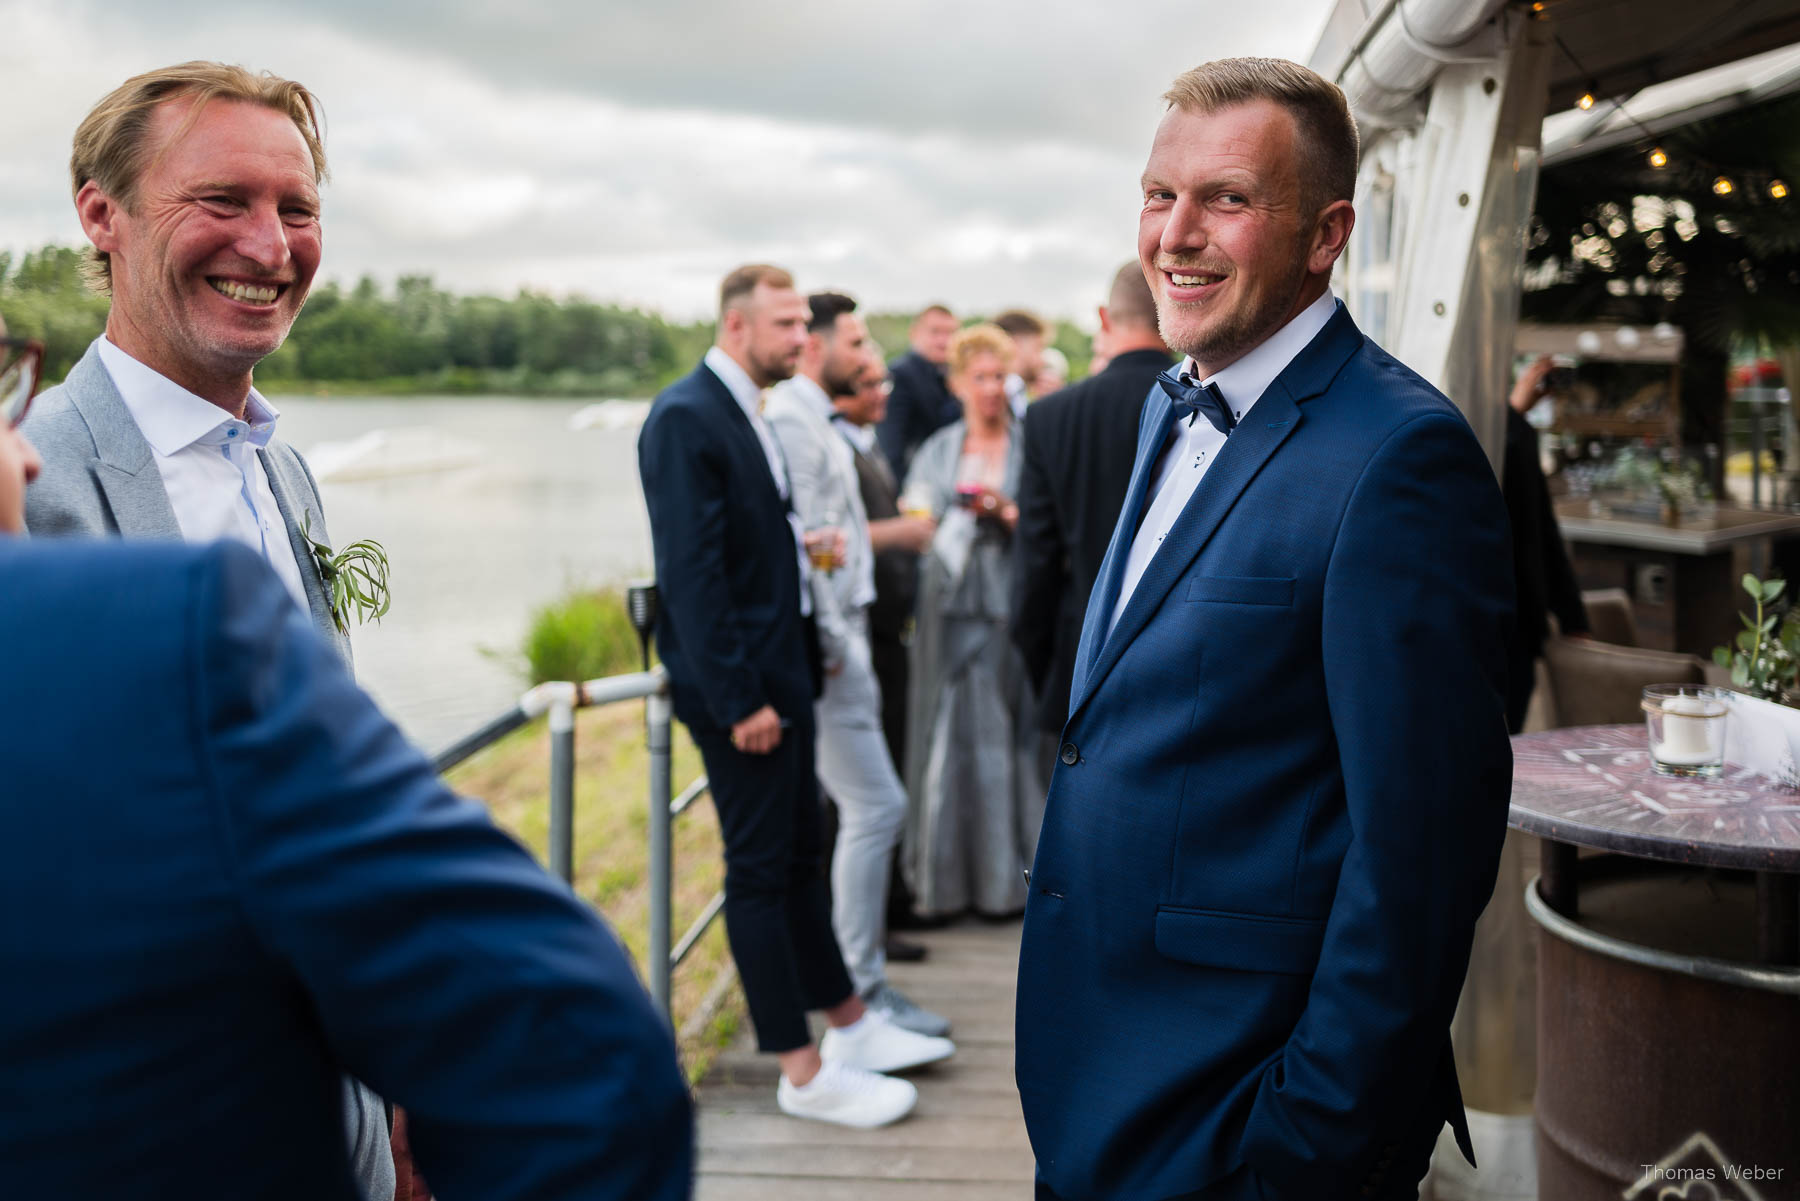 Hochzeitsfeier an der Nordsee, Hochzeitsfotograf Thomas Weber